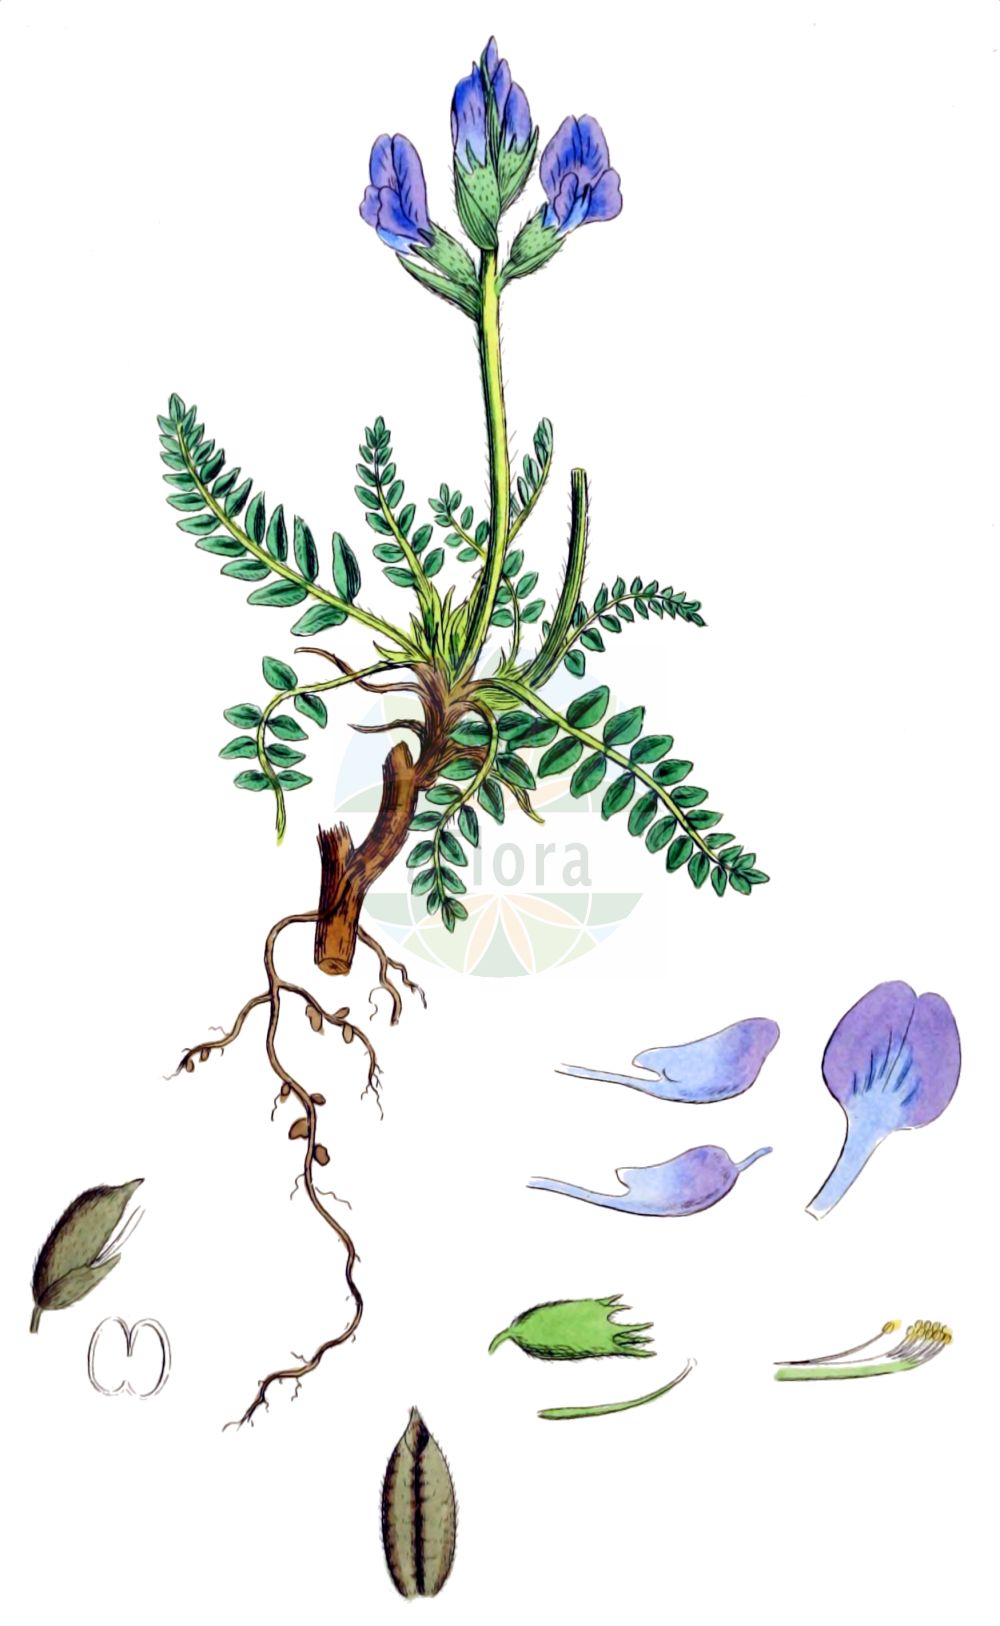 Historische Abbildung von Oxytropis halleri (Purple Oxytropis). Das Bild zeigt Blatt, Bluete, Frucht und Same. ---- Historical Drawing of Oxytropis halleri (Purple Oxytropis). The image is showing leaf, flower, fruit and seed.(Oxytropis halleri,Purple Oxytropis,Astragalus sericeus,Astragalus variabilis,Astragalus velutinus,Oxytropis halleri,Oxytropis,Fahnenwicke,Vetch,Fabaceae,Schmetterlingsblütler,Pea family,Blatt,Bluete,Frucht,Same,leaf,flower,fruit,seed,Sowerby (1790-1813))